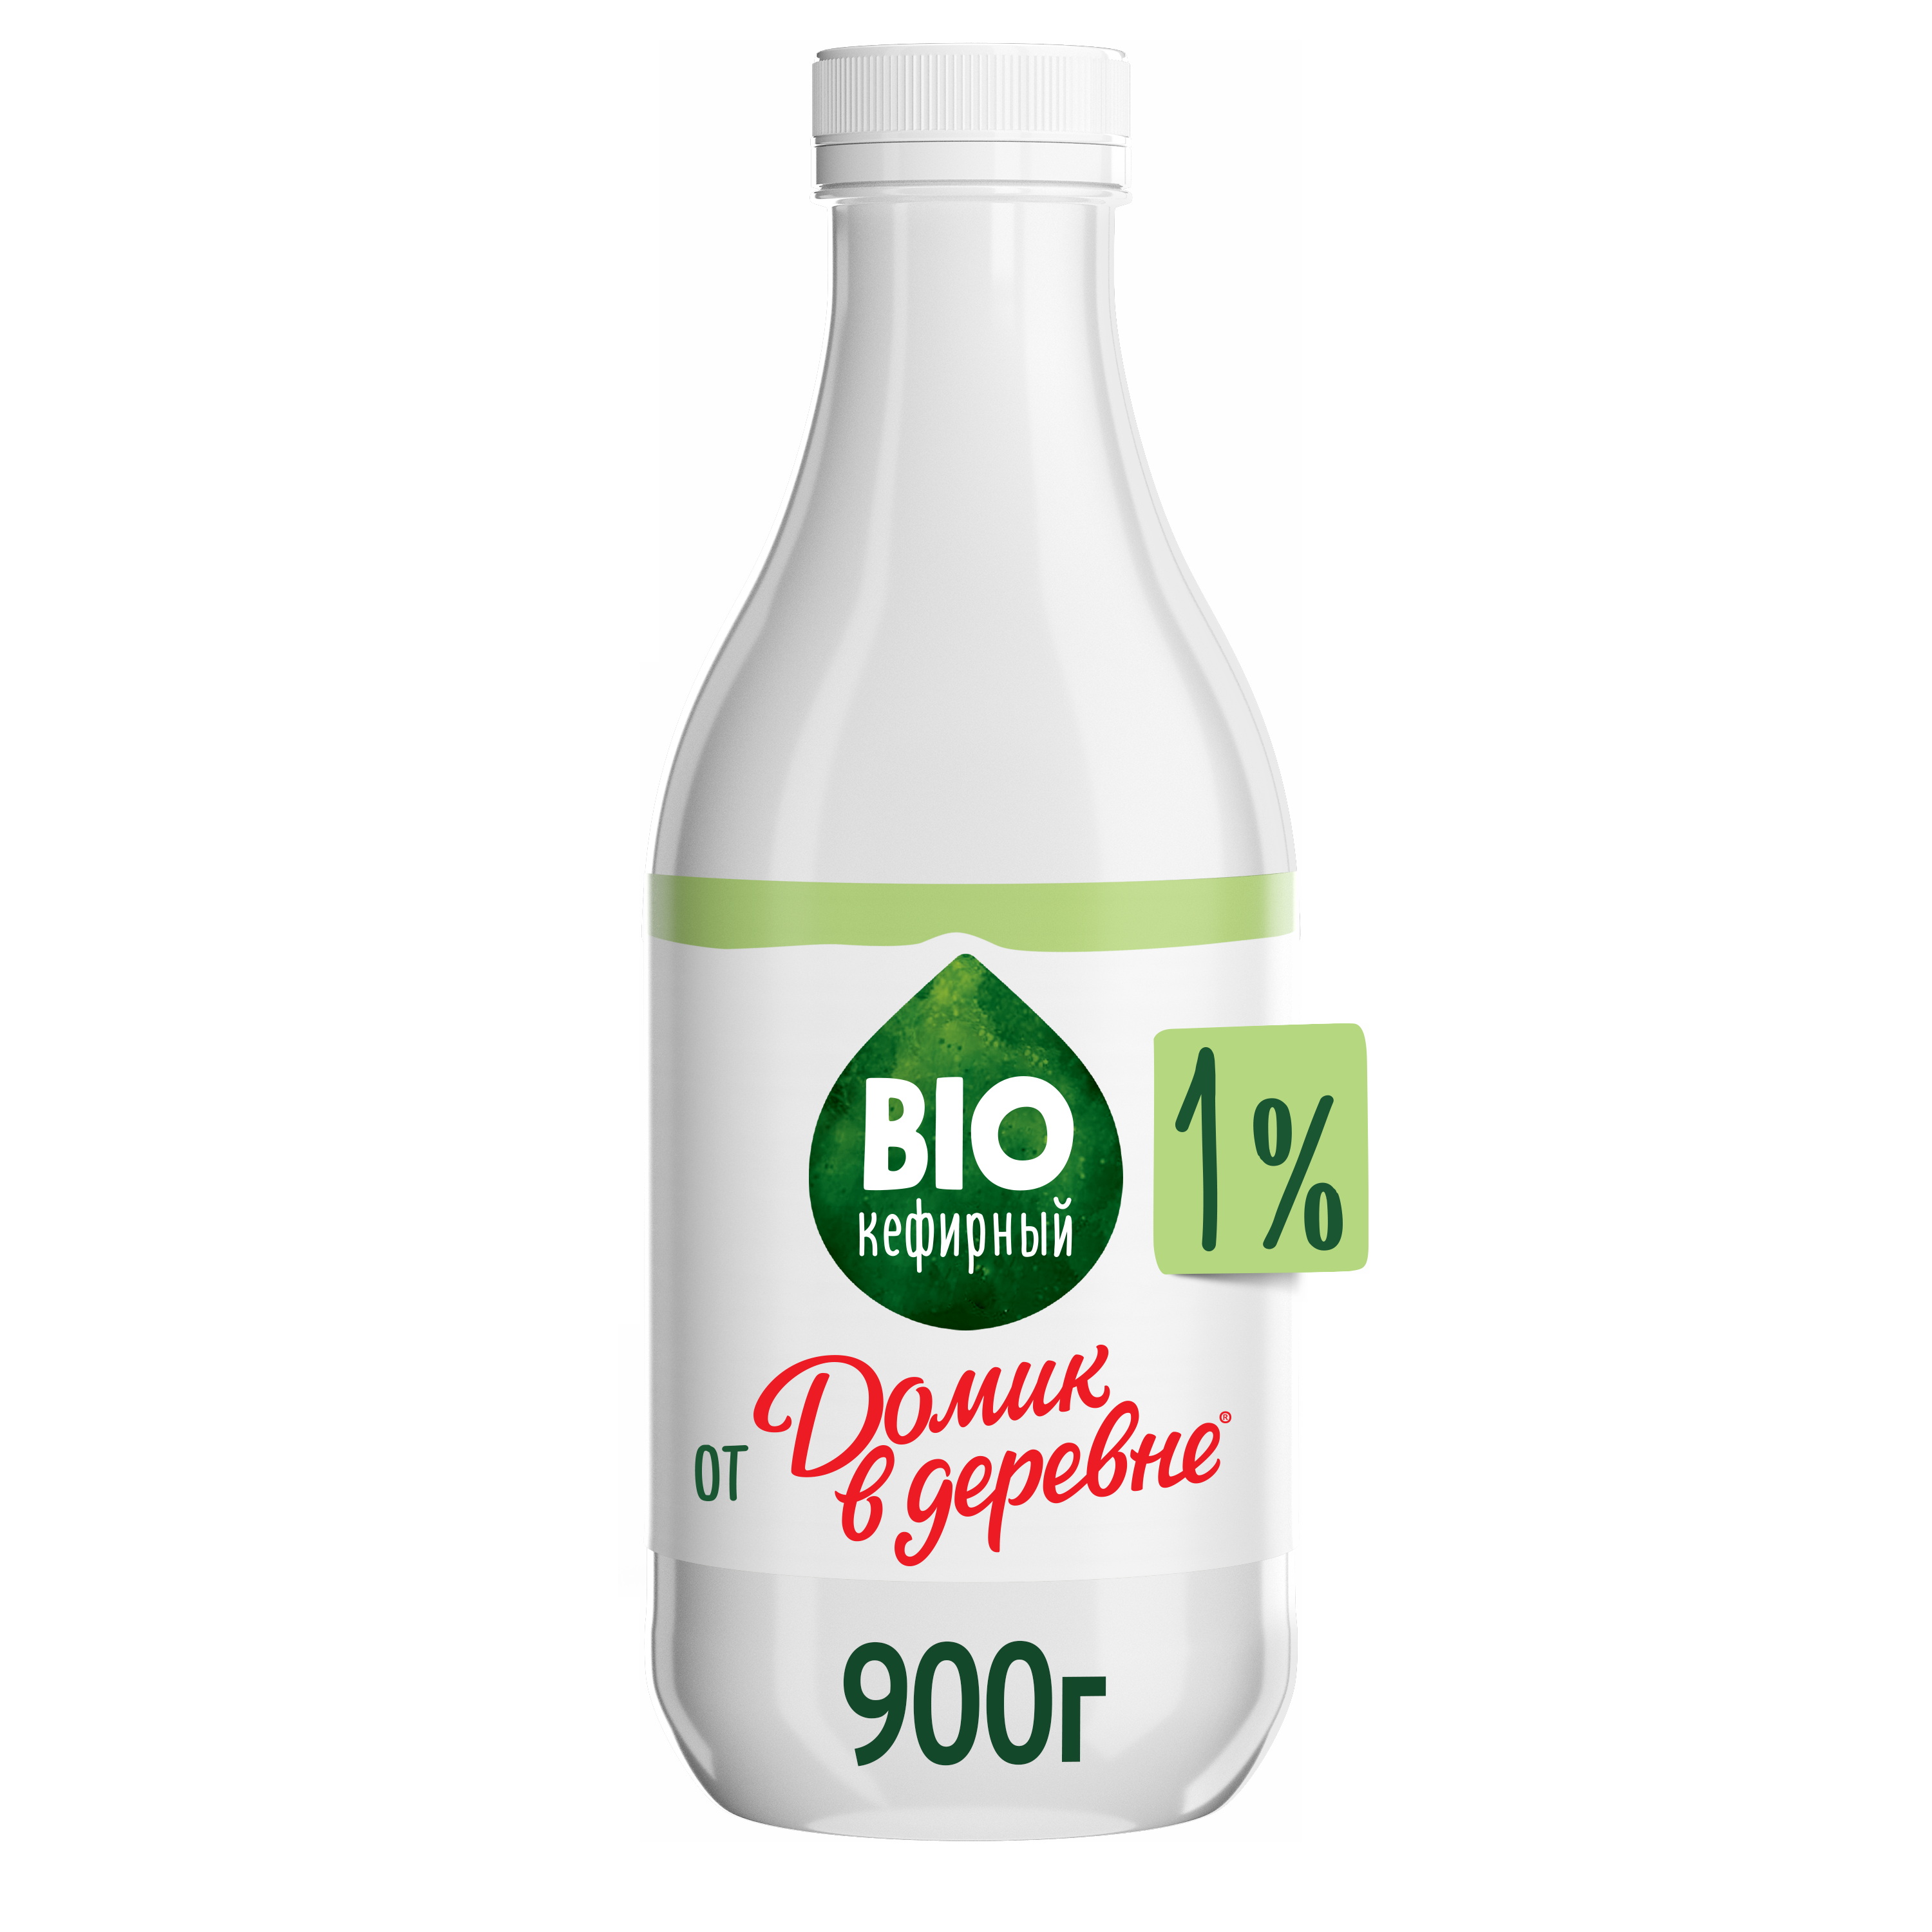 Биокефирный продукт Домик в Деревне 1% 900 мл